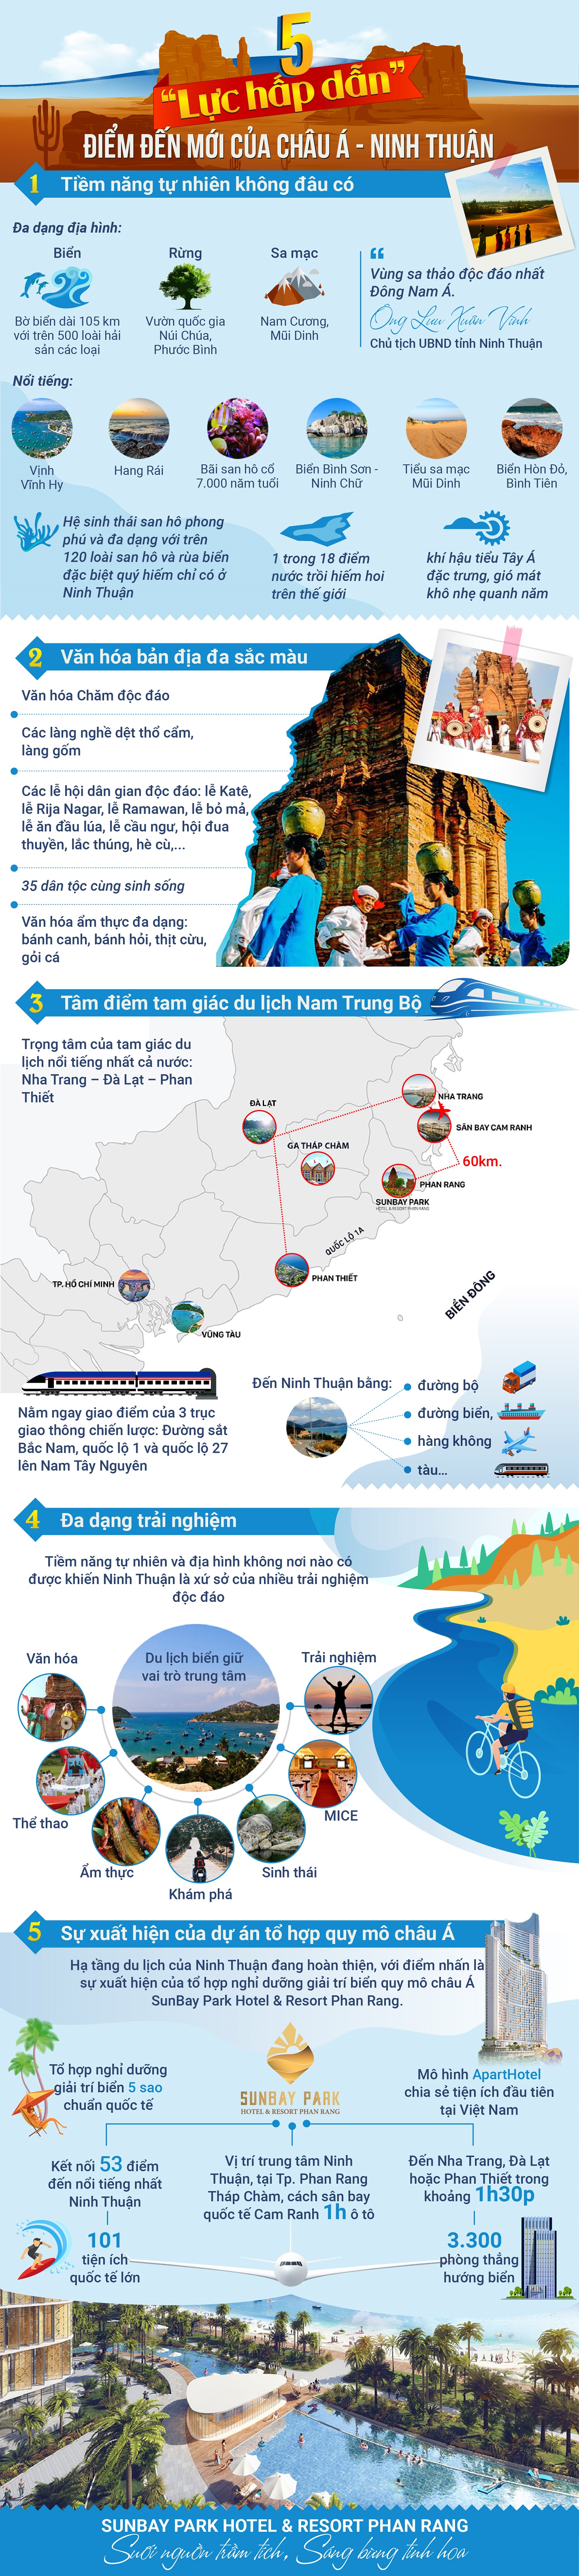 Ninh Thuận là vùng đất hội tụ đủ điều kiện để khẳng định vị thế điểm đến mới trên bản đồ du lịch châu Á.